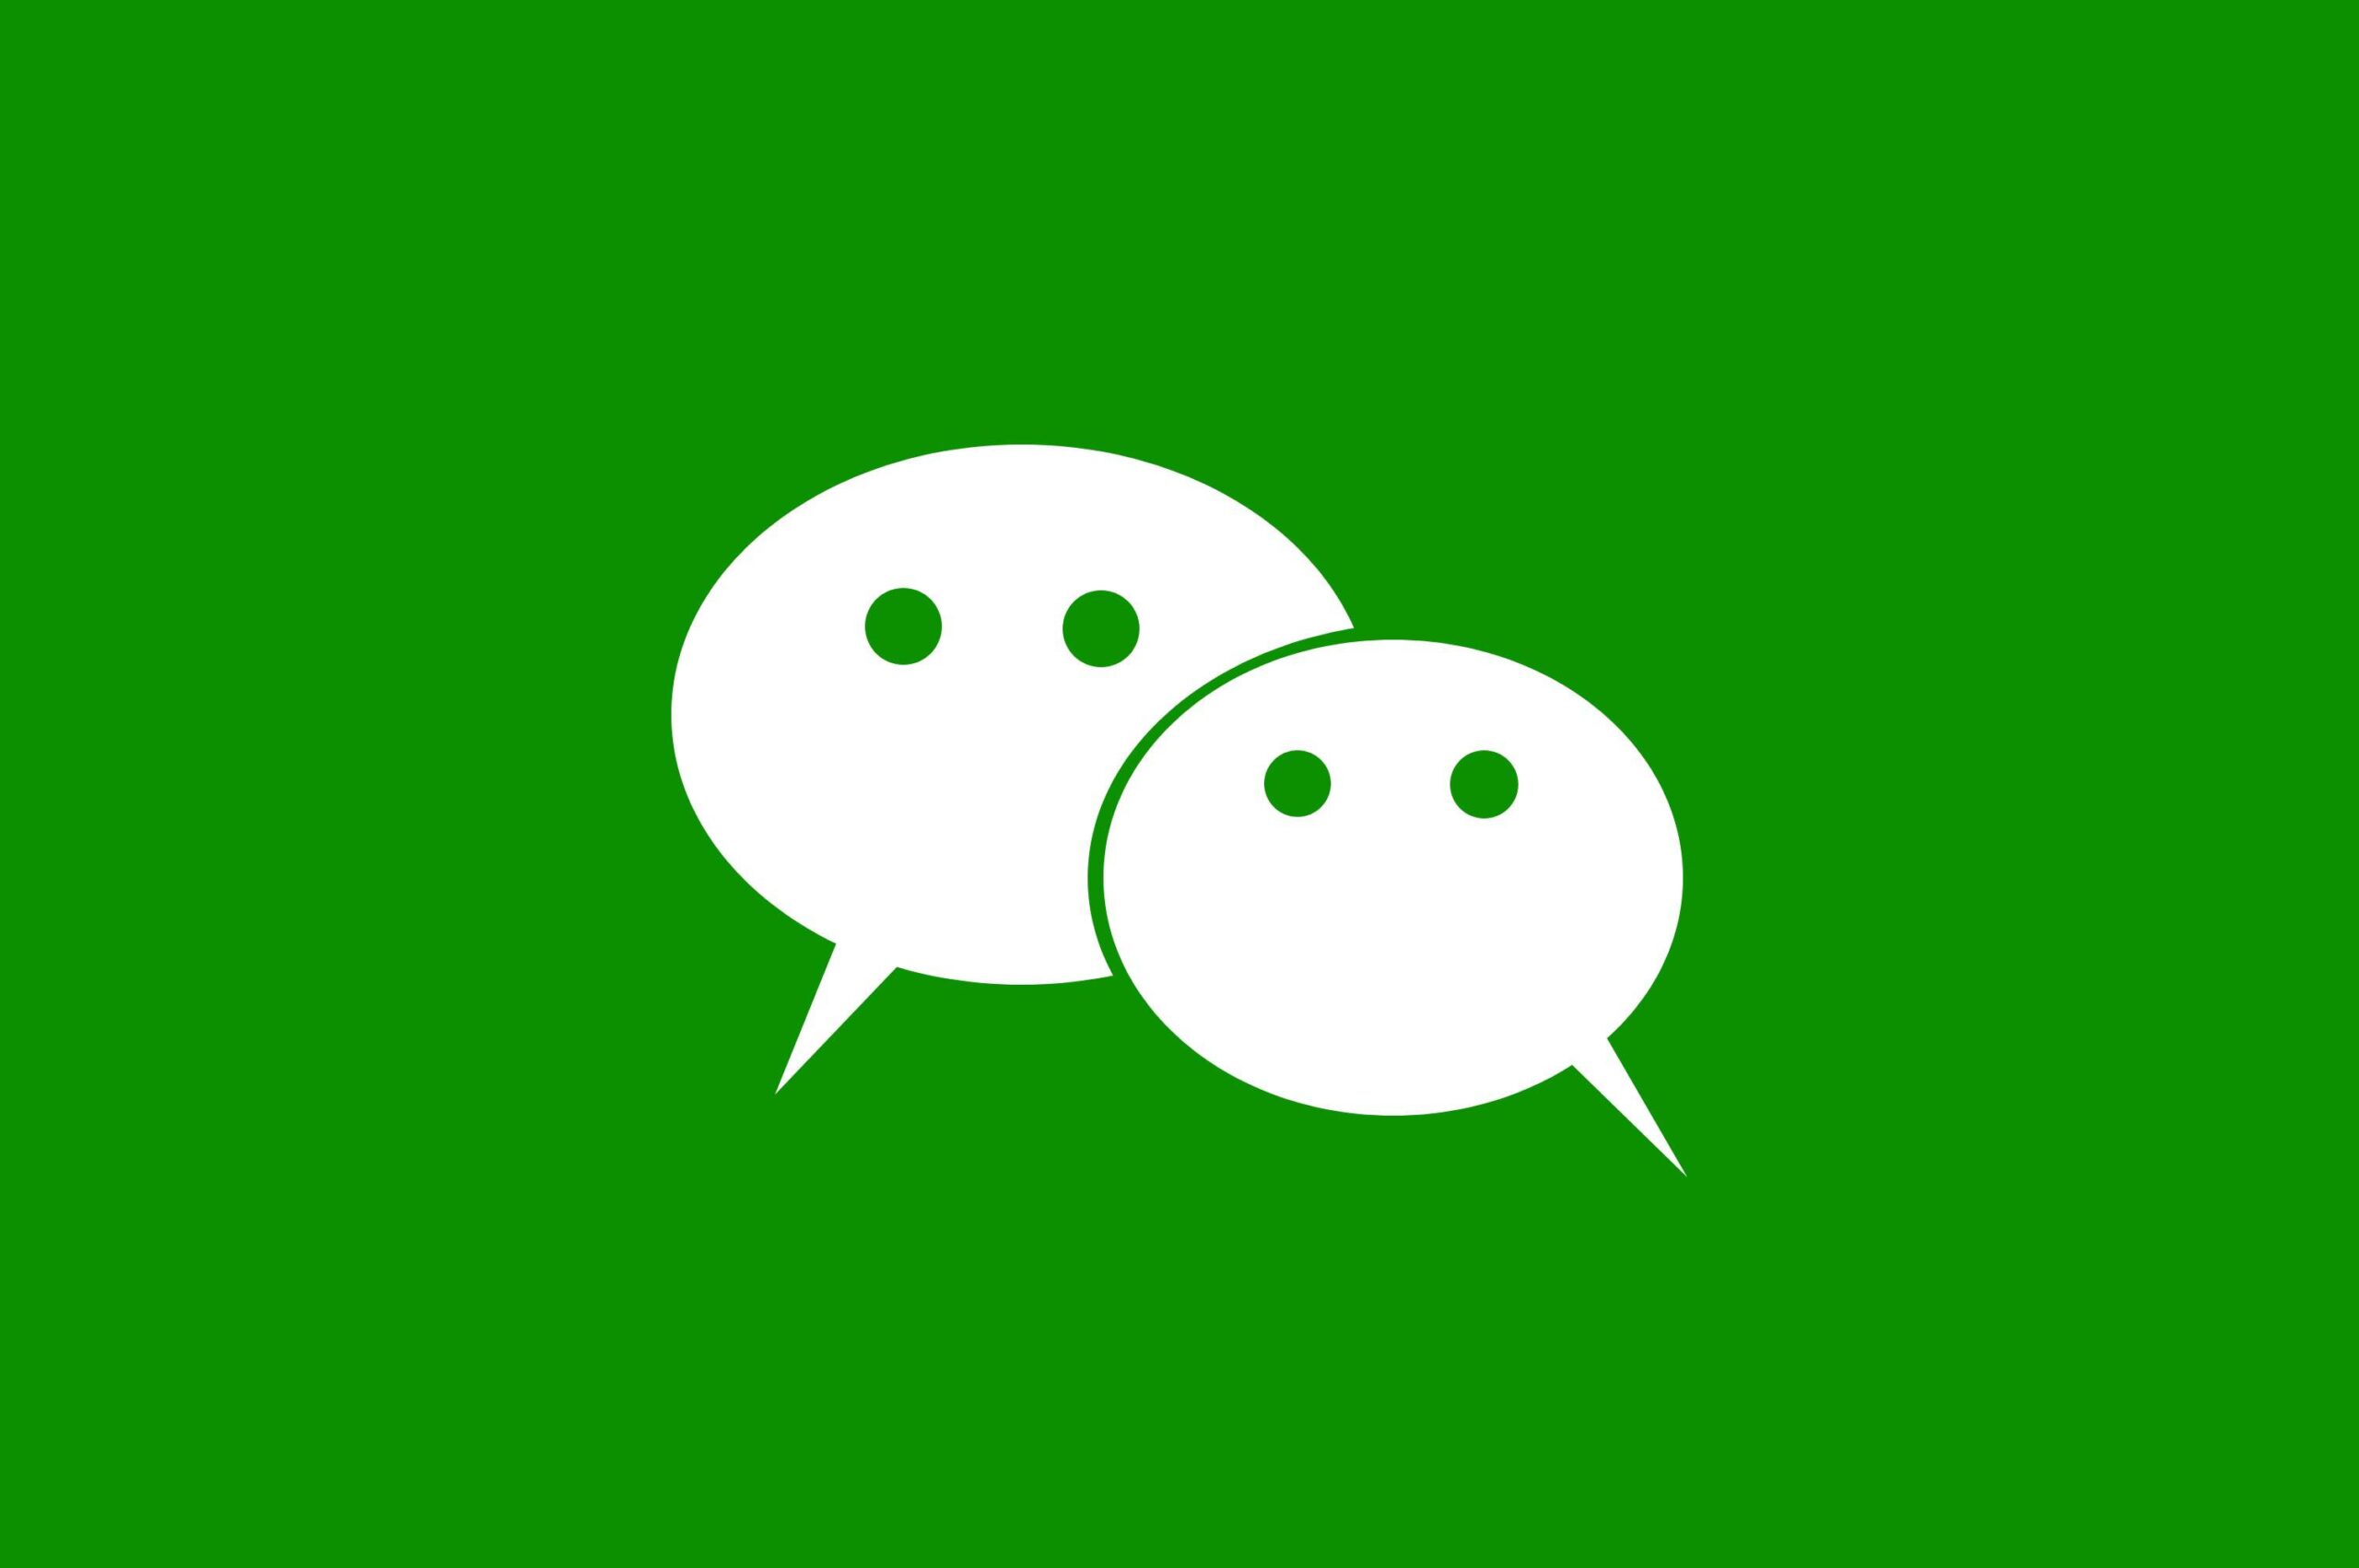 Ολλανδία: Οι δημόσιοι υπάλληλοι δεν επιτρέπεται να χρησιμοποιούν στα υπηρεσιακά τους τηλέφωνα τις AliExpress, WeChat και άλλες εφαρμογές (NOS)